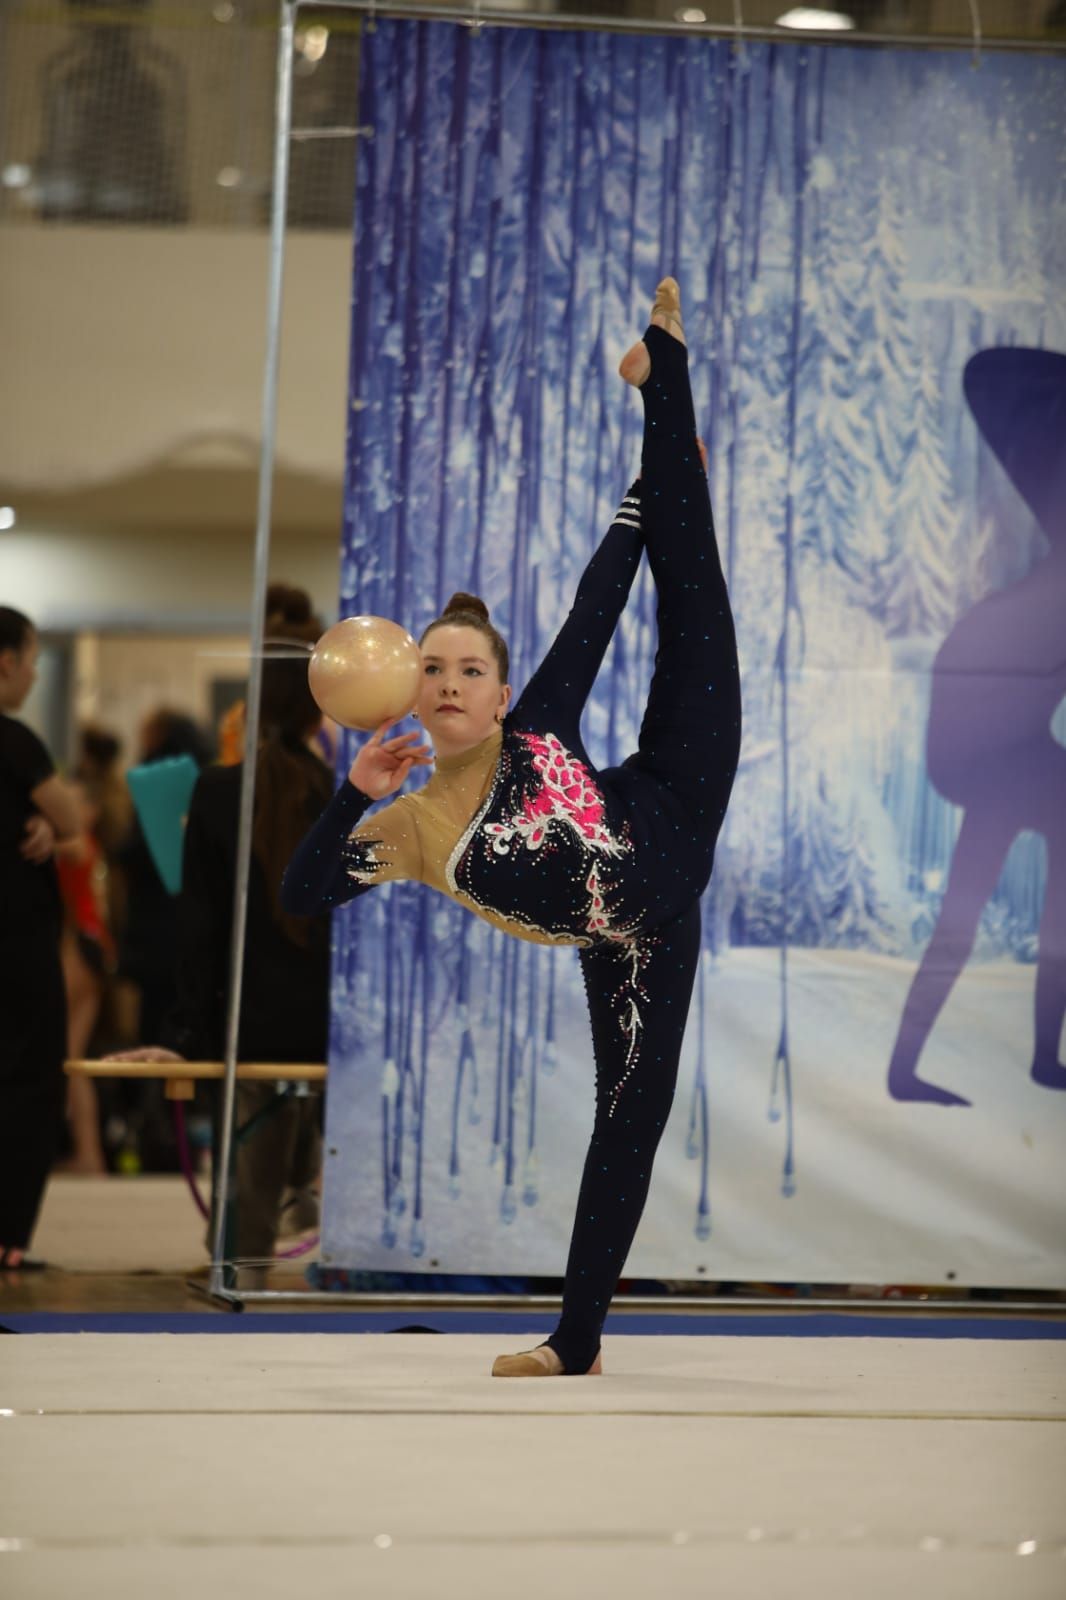 Юные гимнастки Нурлата новый спортивный сезон открыли с хорошими результатами